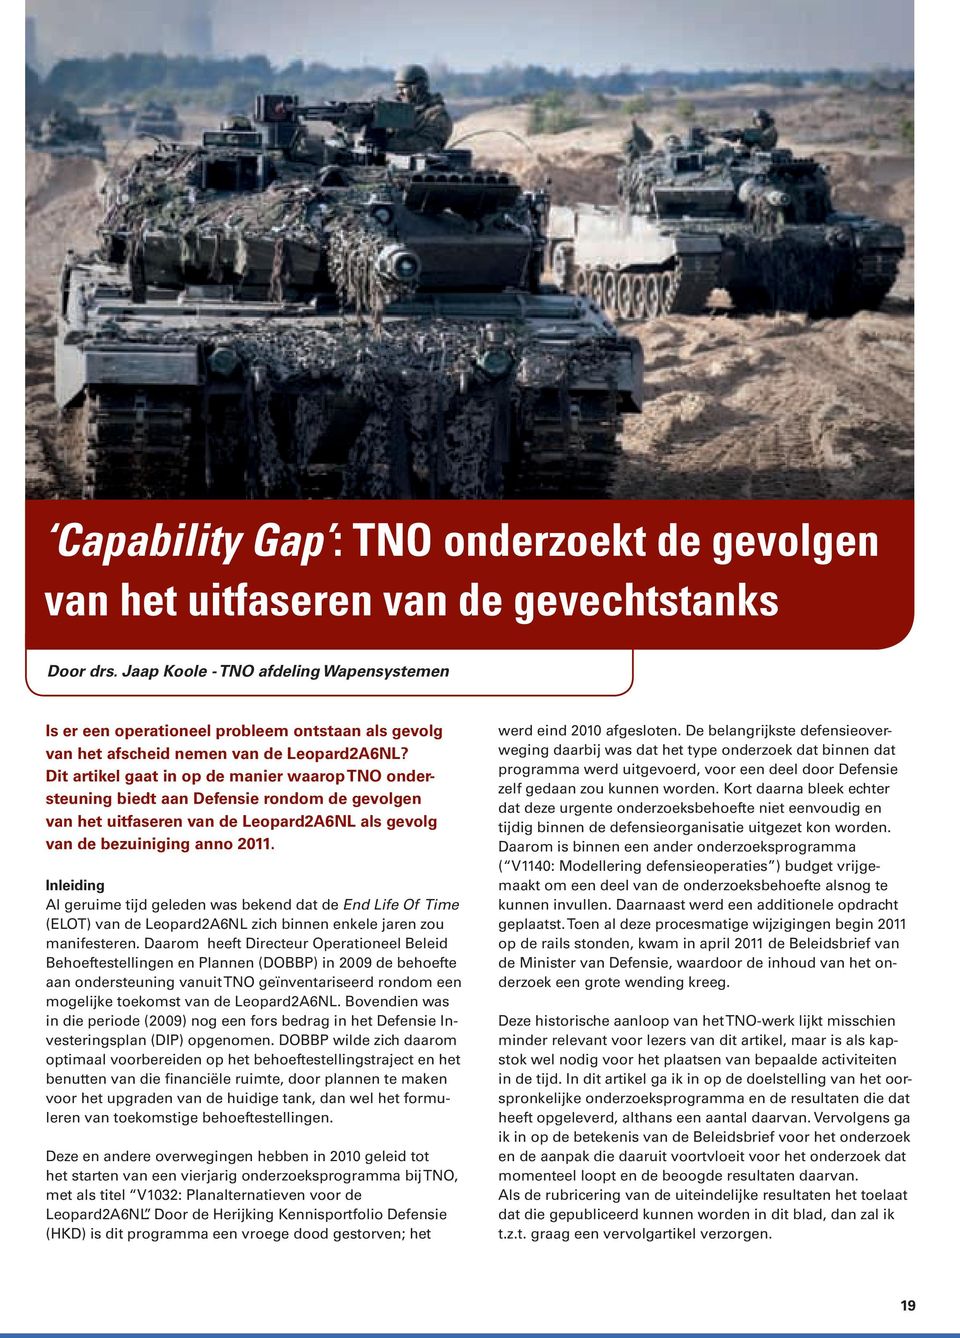 Dit artikel gaat in op de manier waarop TNO ondersteuning biedt aan Defensie rondom de gevolgen van het uitfaseren van de Leopard2A6NL als gevolg van de bezuiniging anno 2011.